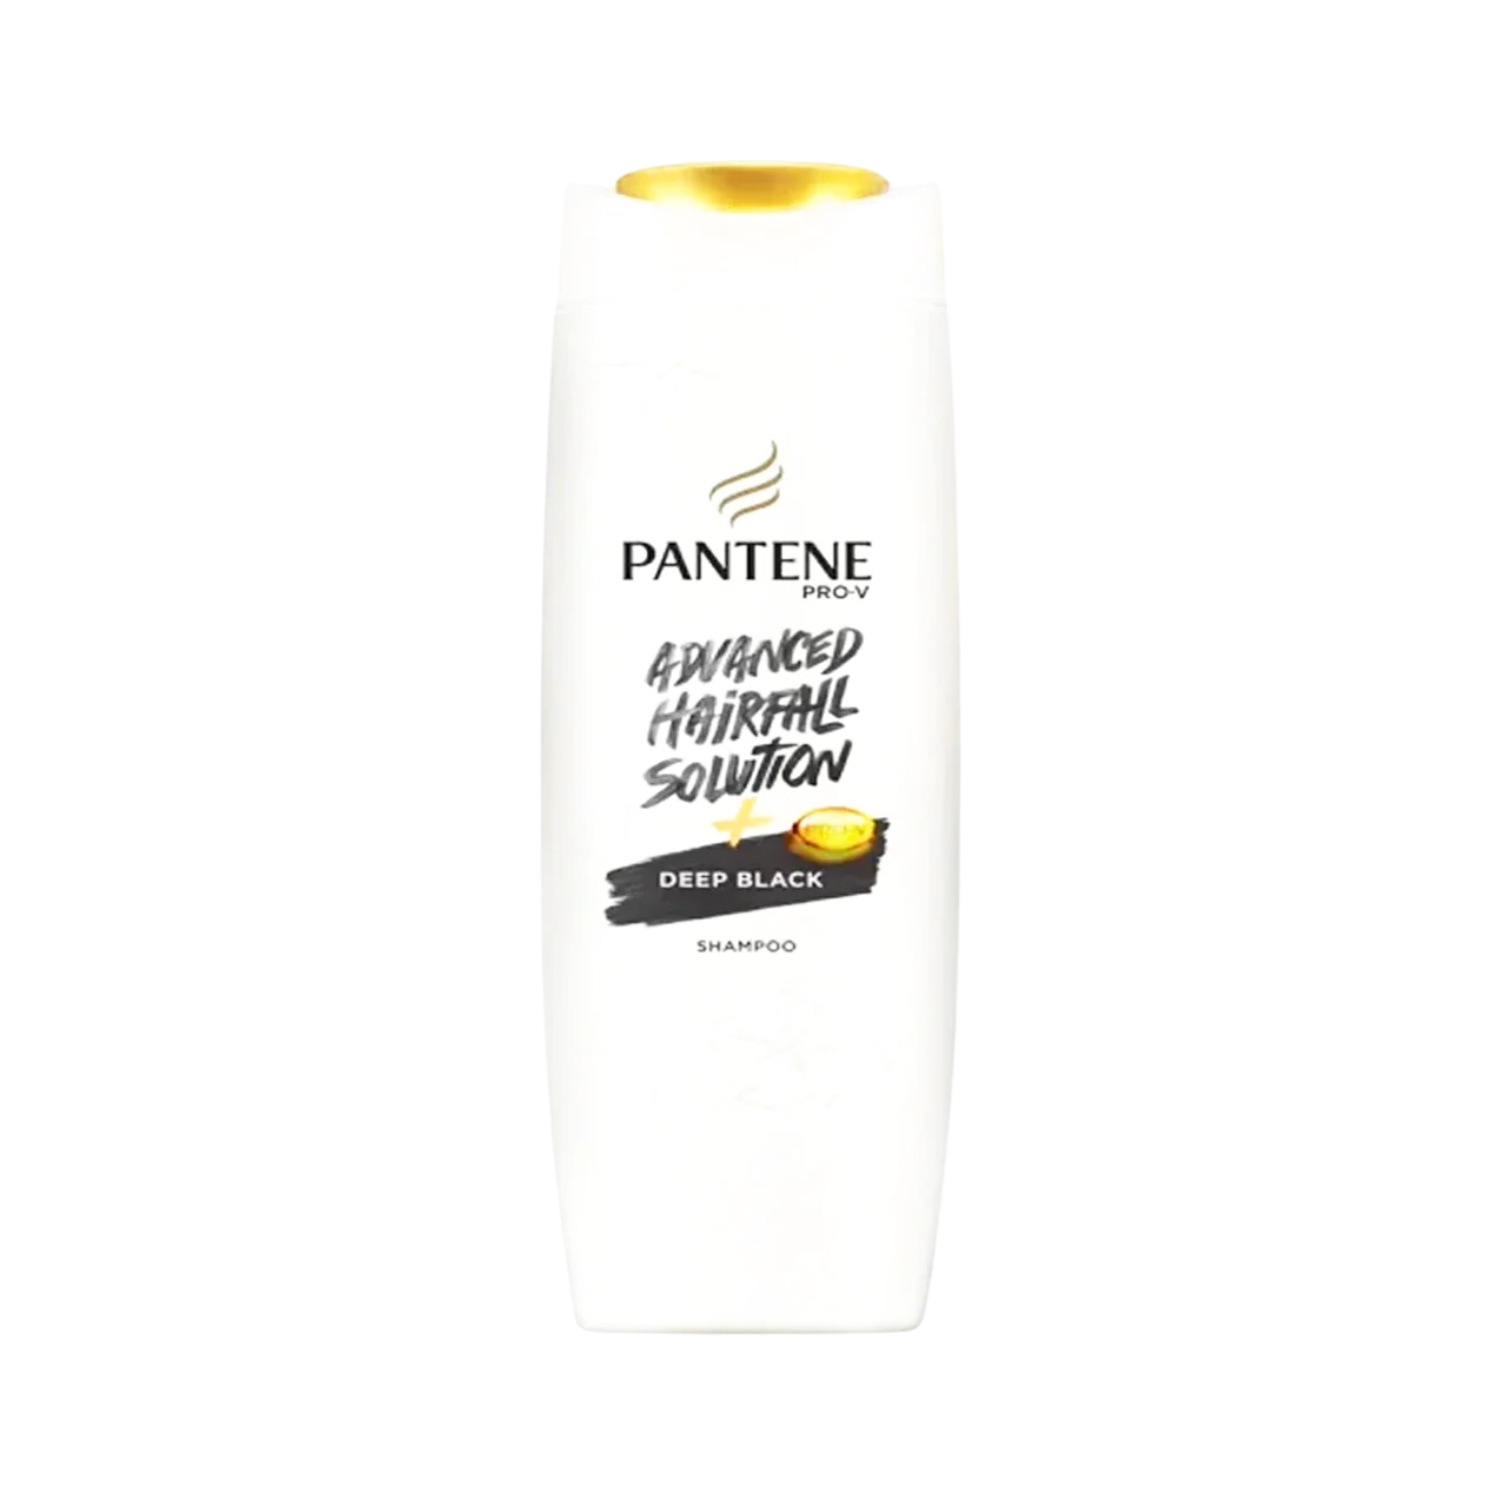 pantene-advanced-hair-fall-solution-deep-black-shampoo-360ml